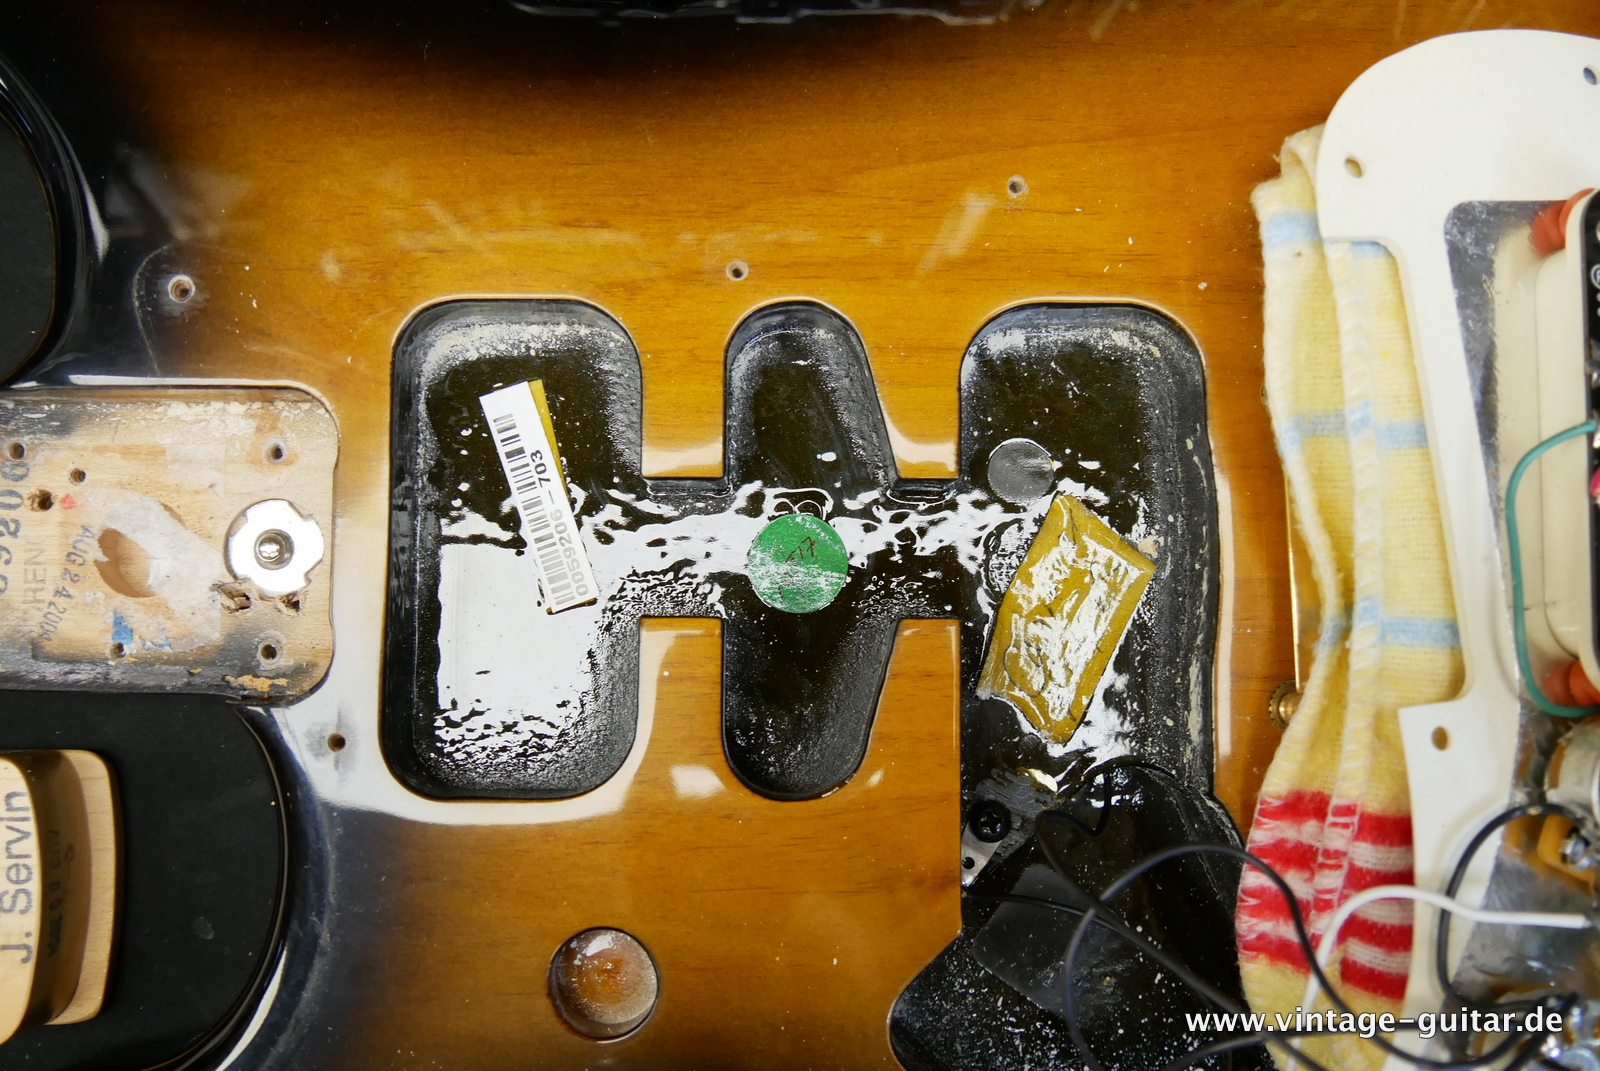 Fender_Stratocaster_deluxe_50th_anniversary__left_hand_sunburst_tweed_case_2004-014.JPG